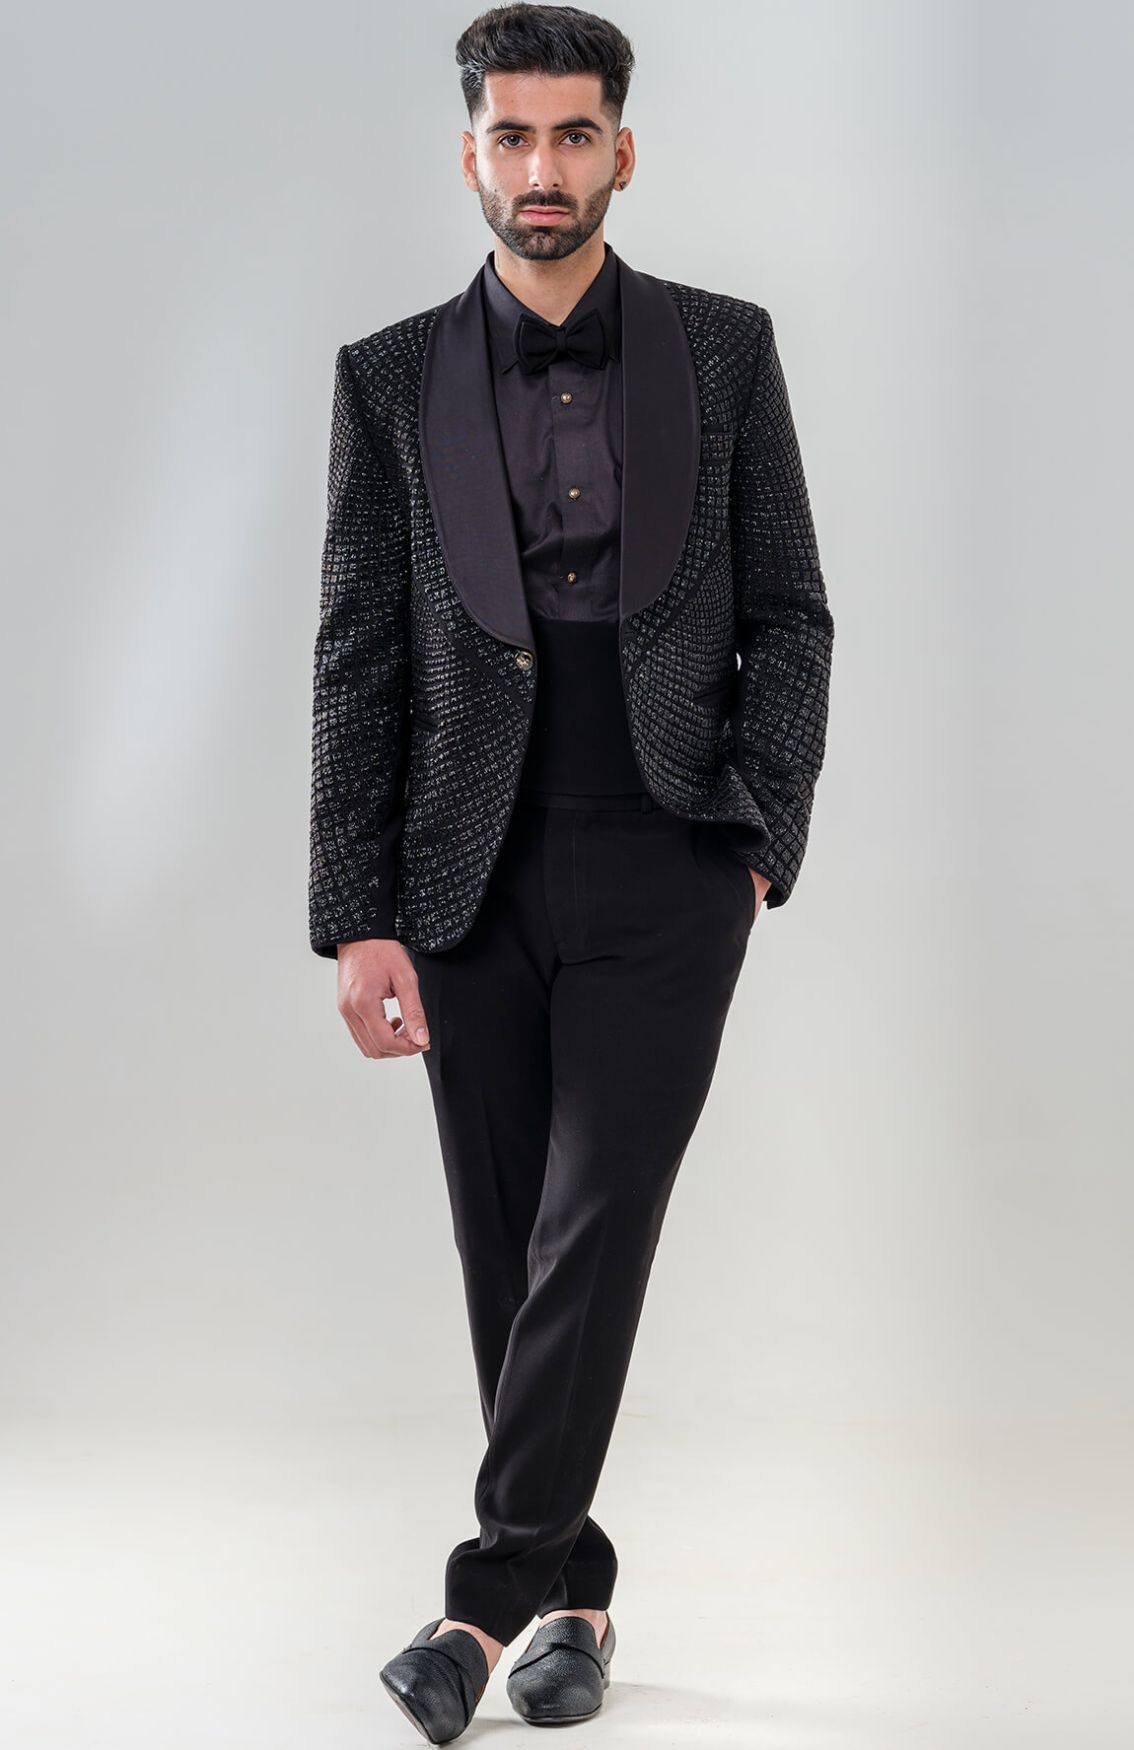 Cutdana Embellished Black Tuxedo With Shawl Lapel